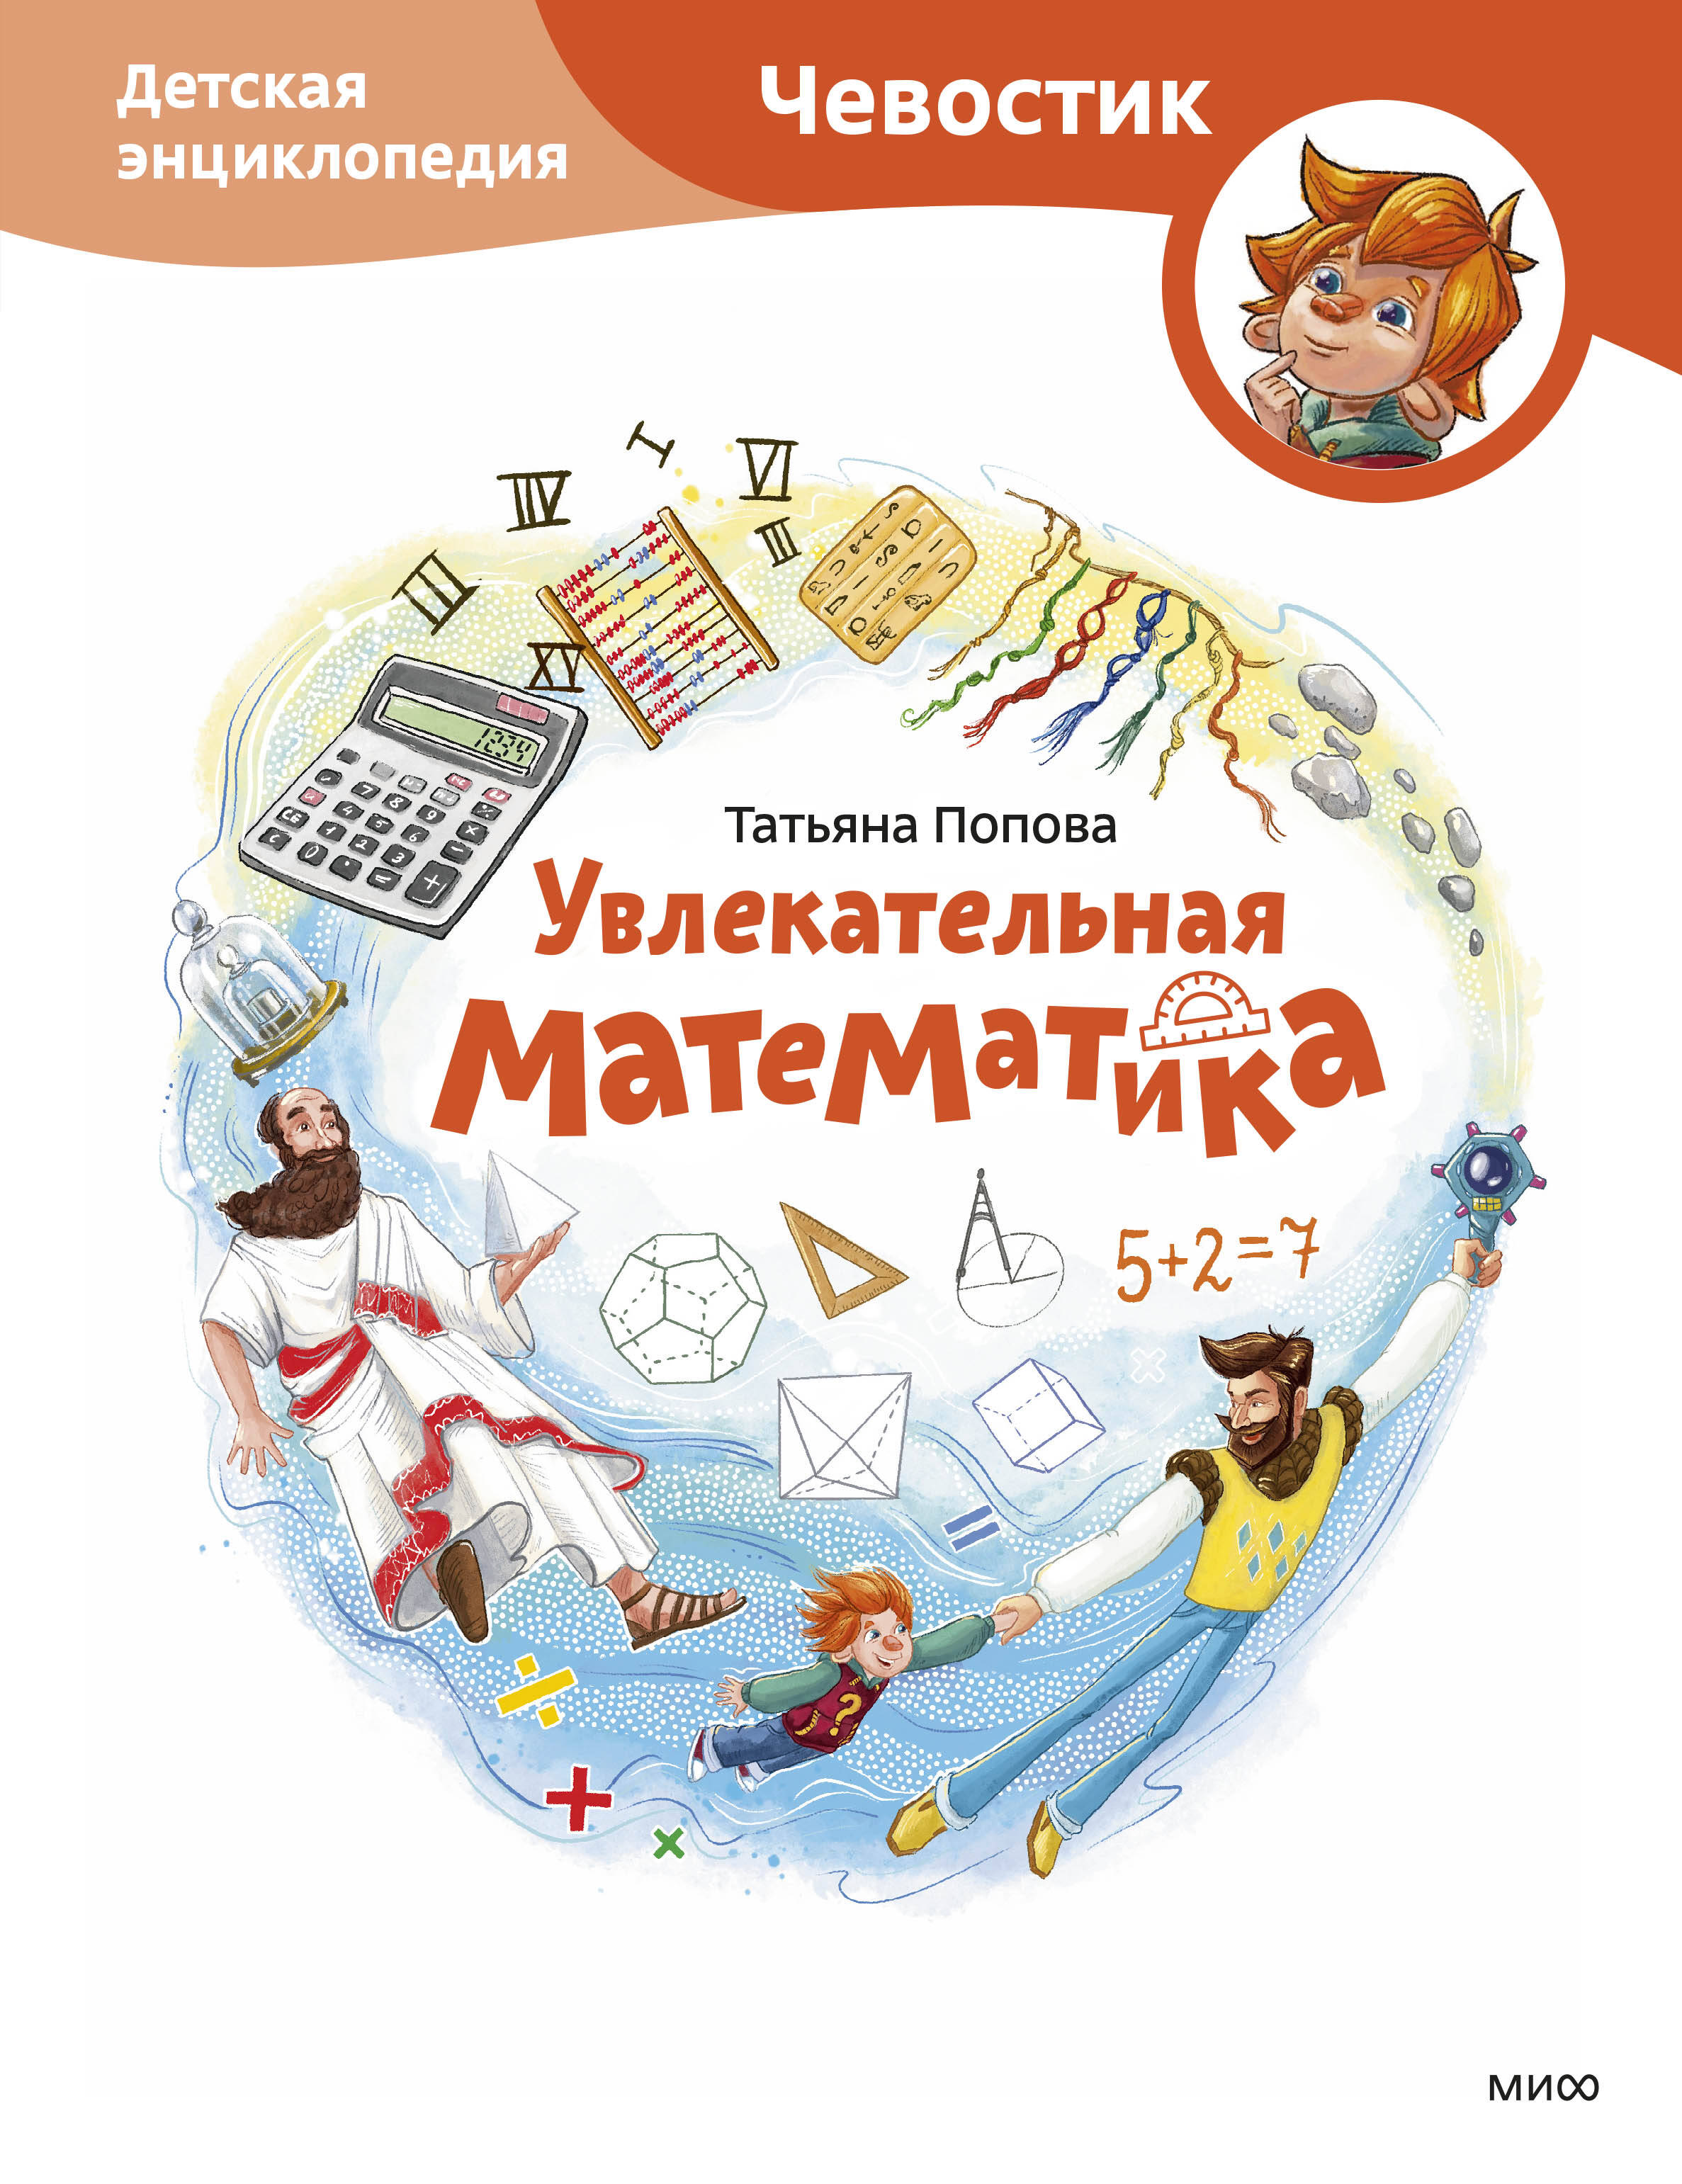 Увлекательная математика. Детская энциклопедия (Чевостик) технологии детская энциклопедия чевостик